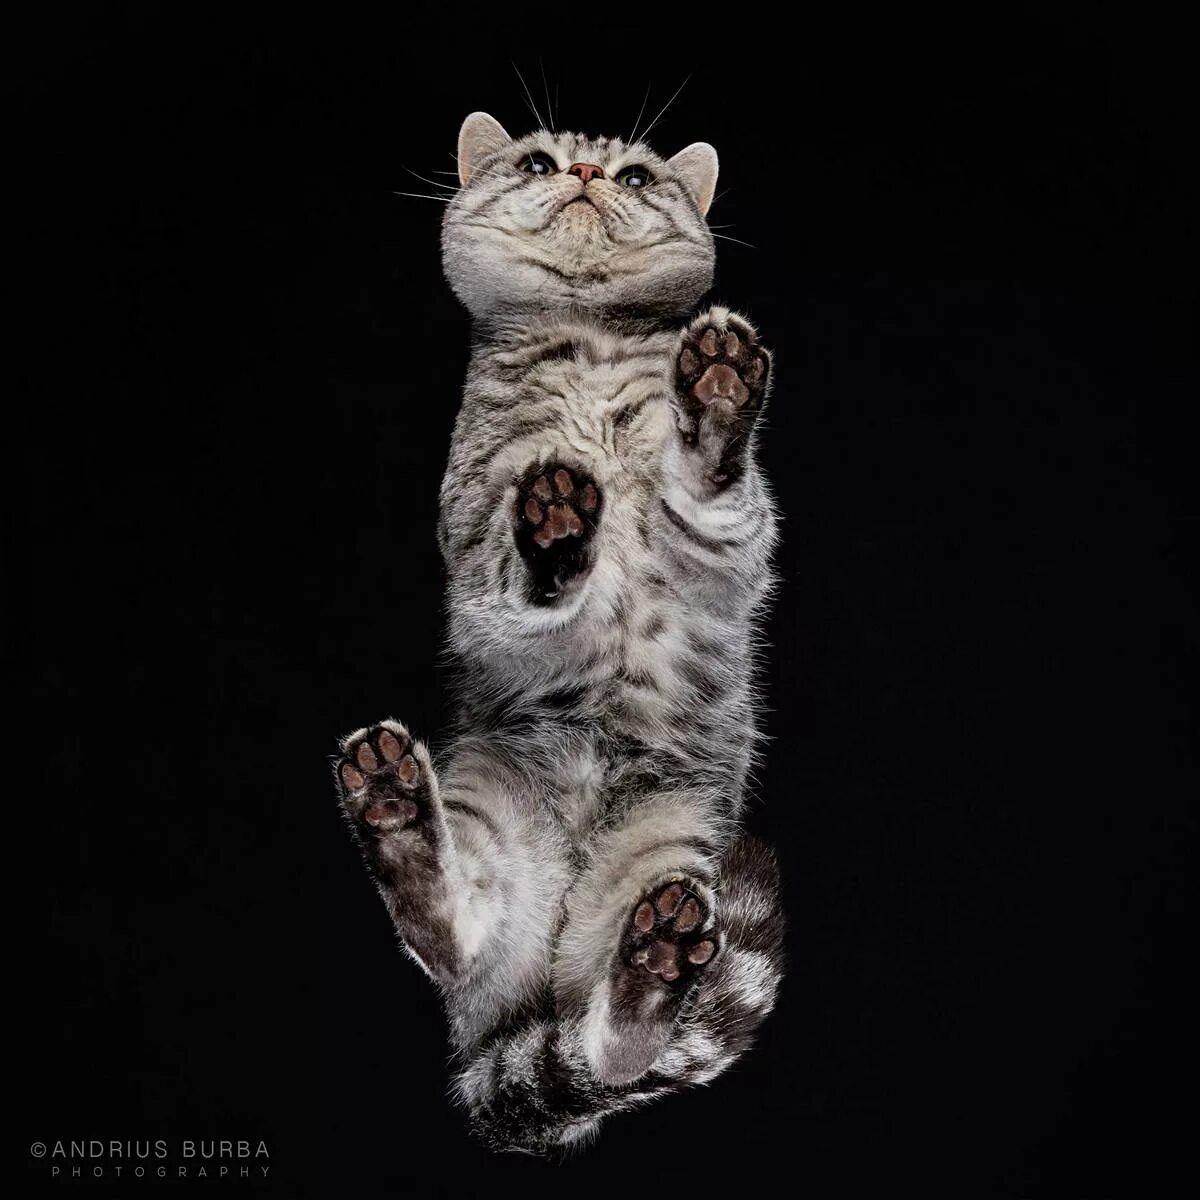 Андриус Бурба фотограф. Кошачий фотограф Андриус Бурба. Кот с поднятой лапой. Кошка вид снизу.